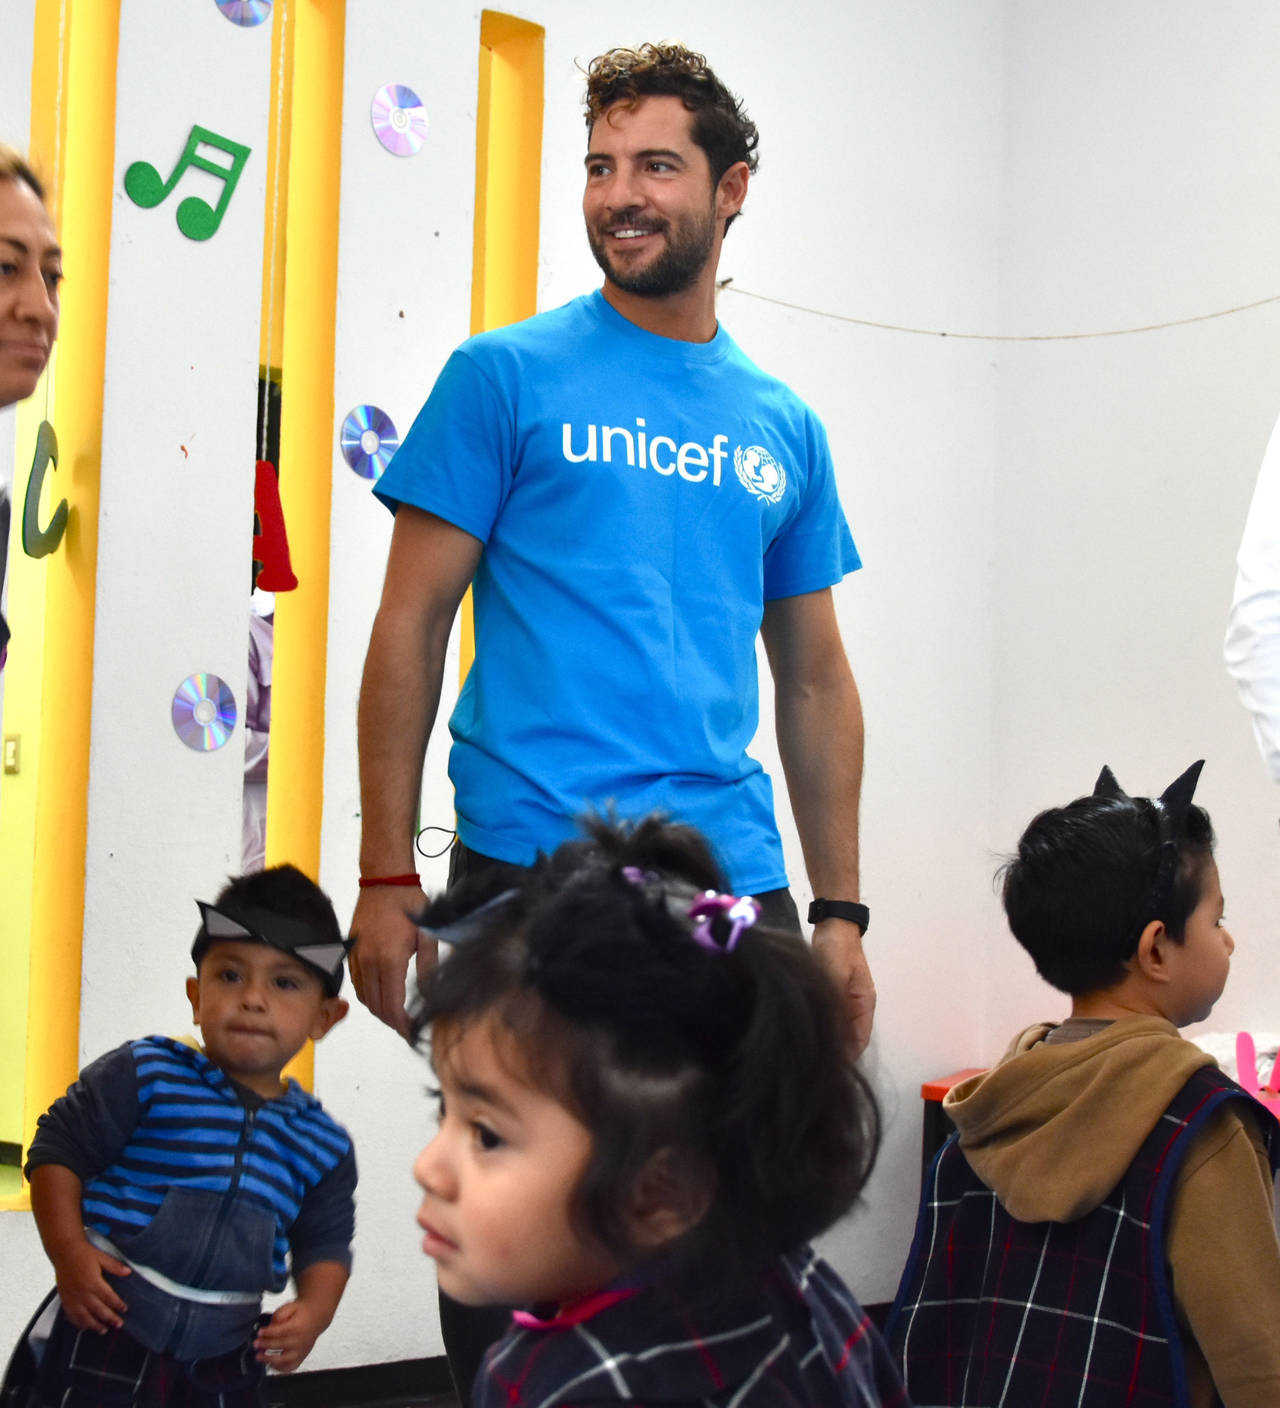 Visita. El reconocido cantante David Bisbal visitó una escuela en la Ciudad de México en su papel de embajador de Unicef. (EFE)